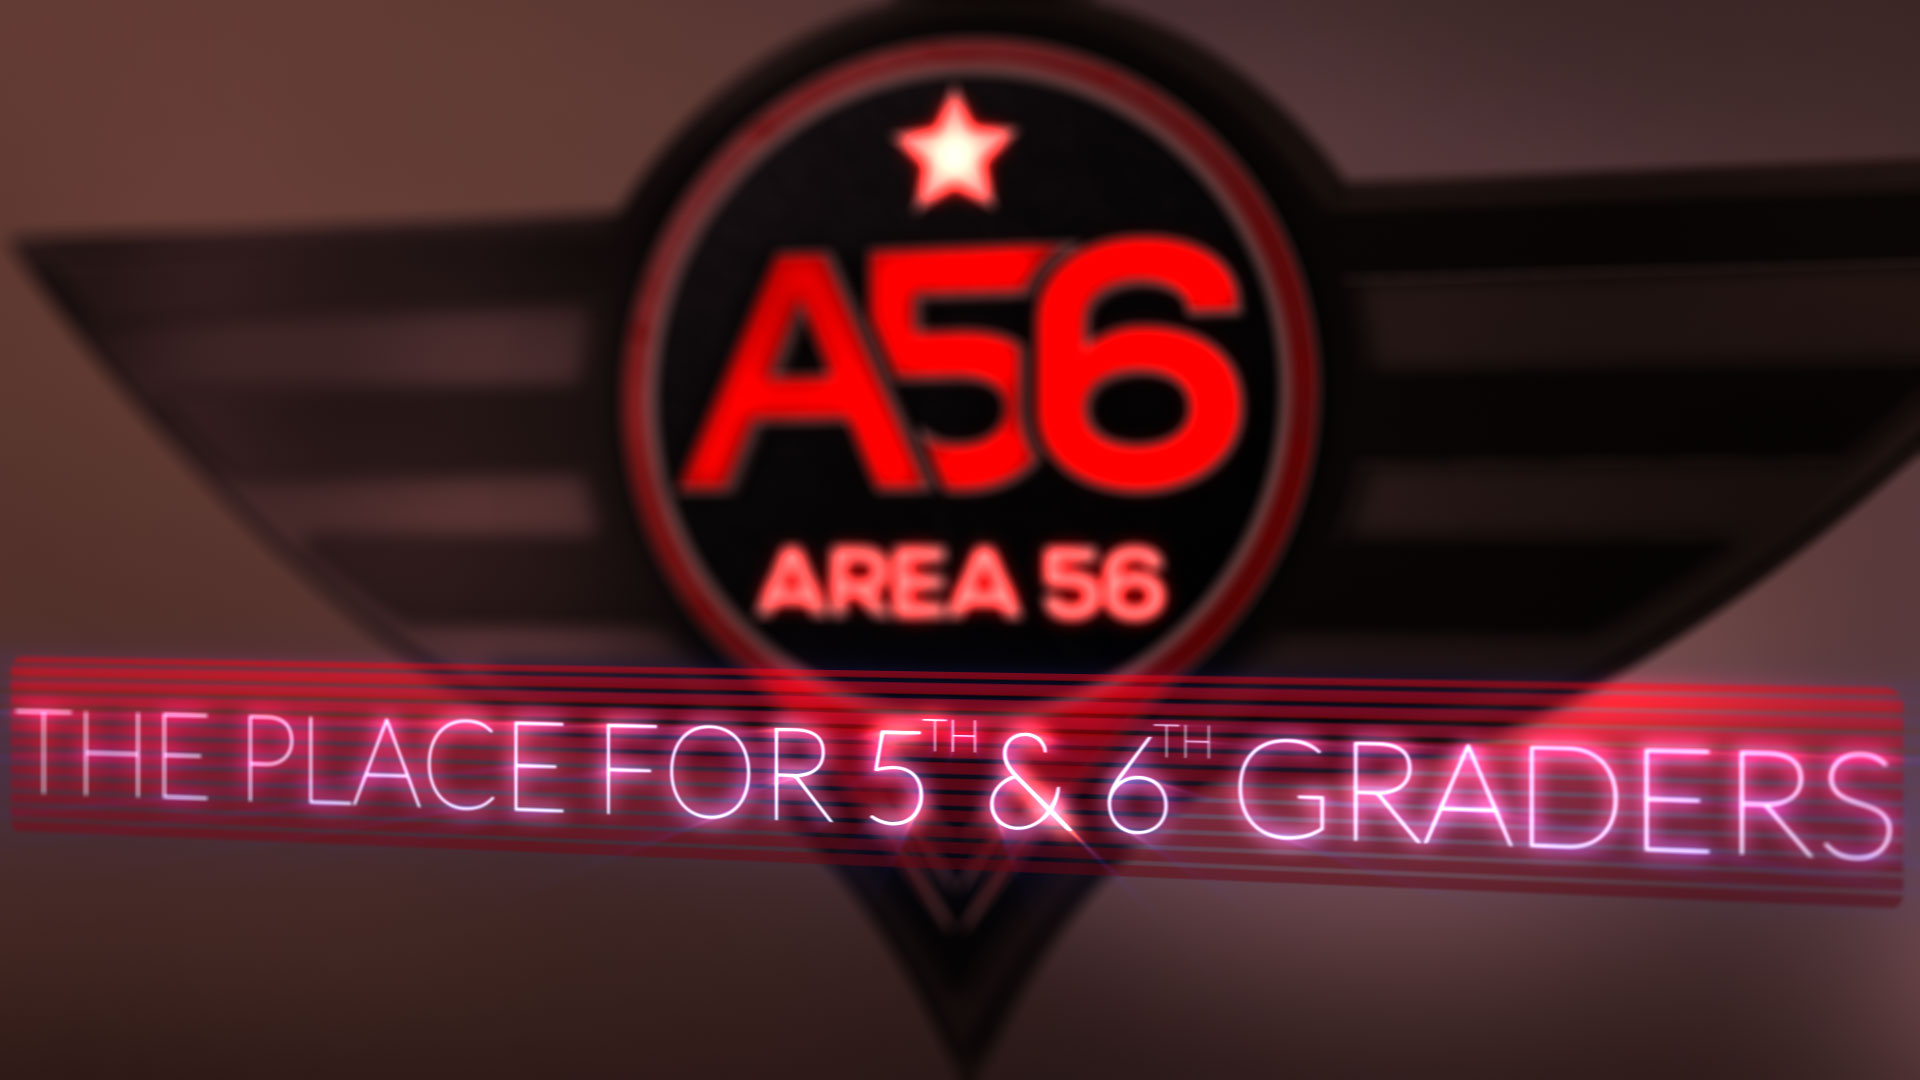 AREA 56